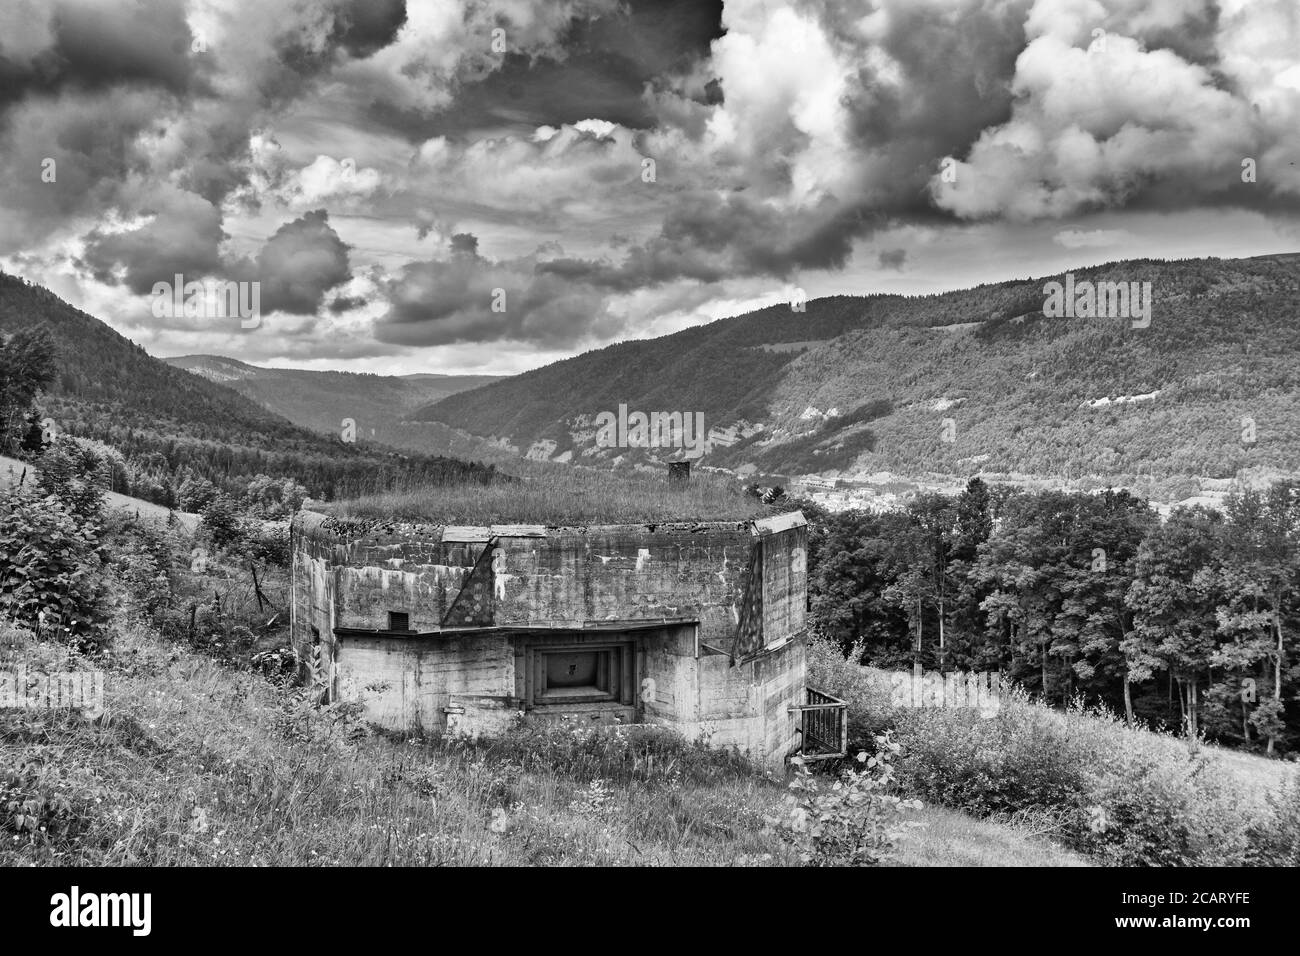 Suisse, canton de Vaud, Vallorbe, fort de la Seconde Guerre mondiale et position de l'artillerie face à la frontière française, barrage de l'artillerie Banque D'Images